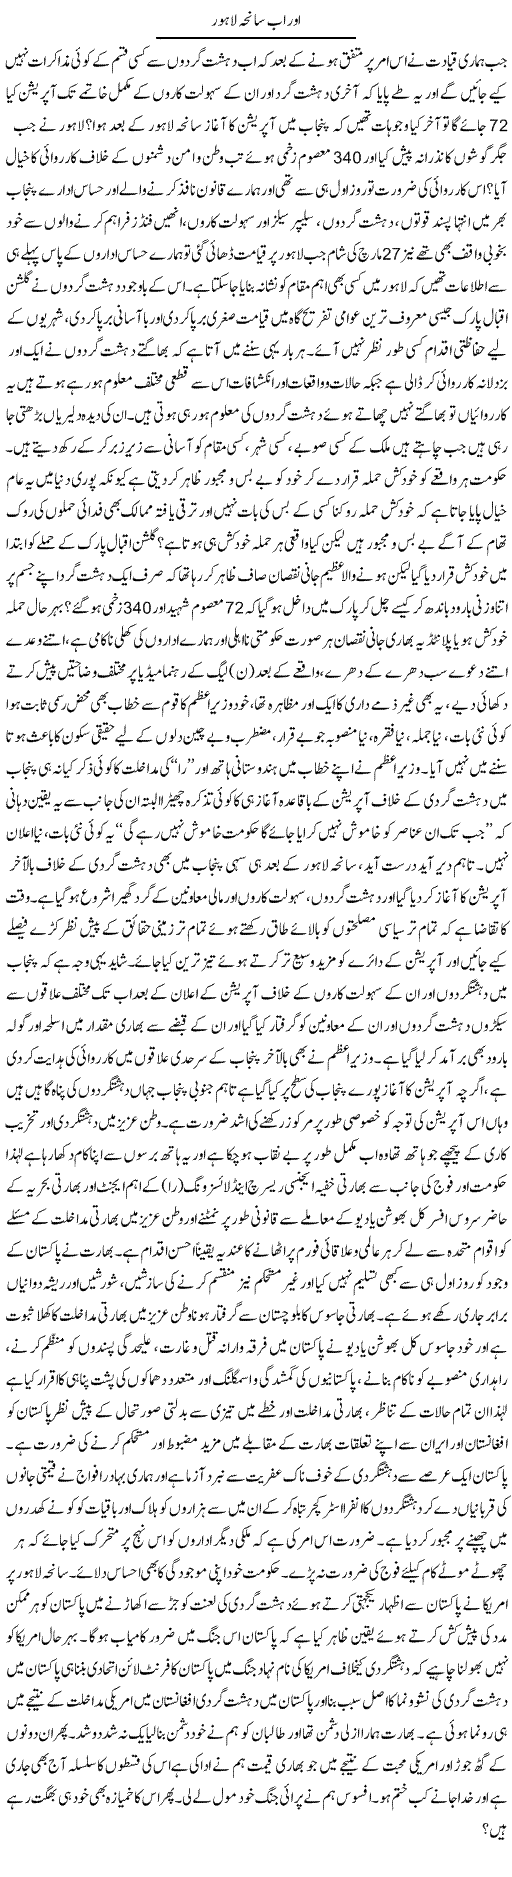 Aor Ab Saneha Lahore | Dr. Muhammad Tayyab Khan Singhanvi | Daily Urdu Columns